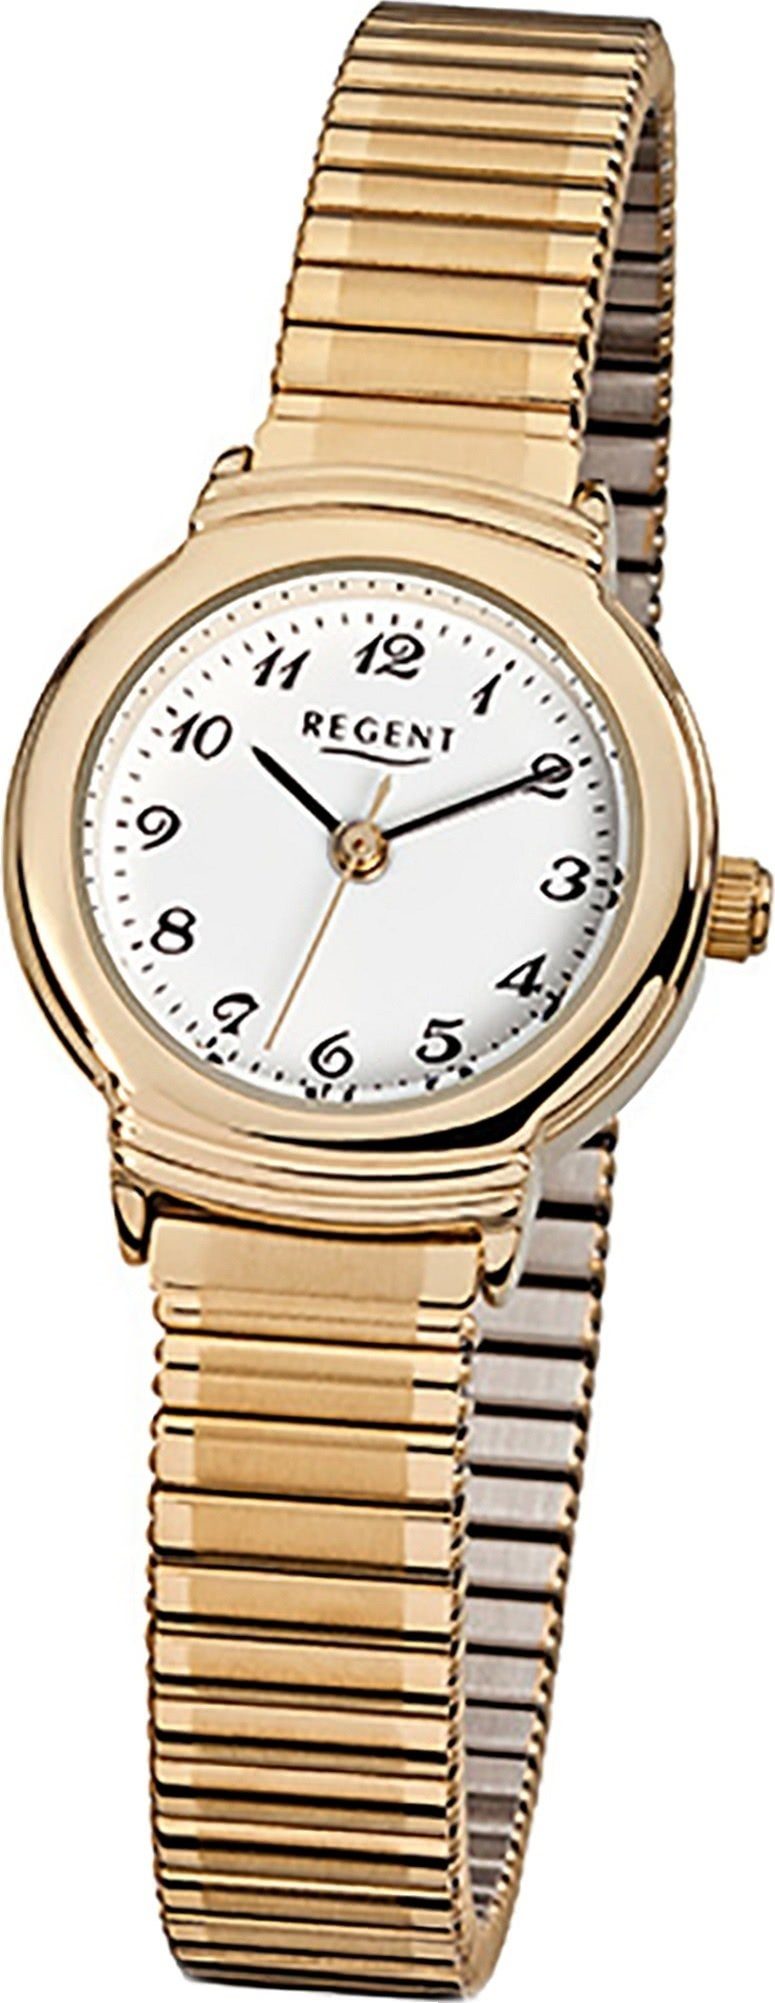 Regent Quarzuhr Regent Stahl Damen Uhr F-265 Quarzuhr, Damenuhr Edelstahl, ionenplattiert, rundes Gehäuse, klein (ca. 24mm)